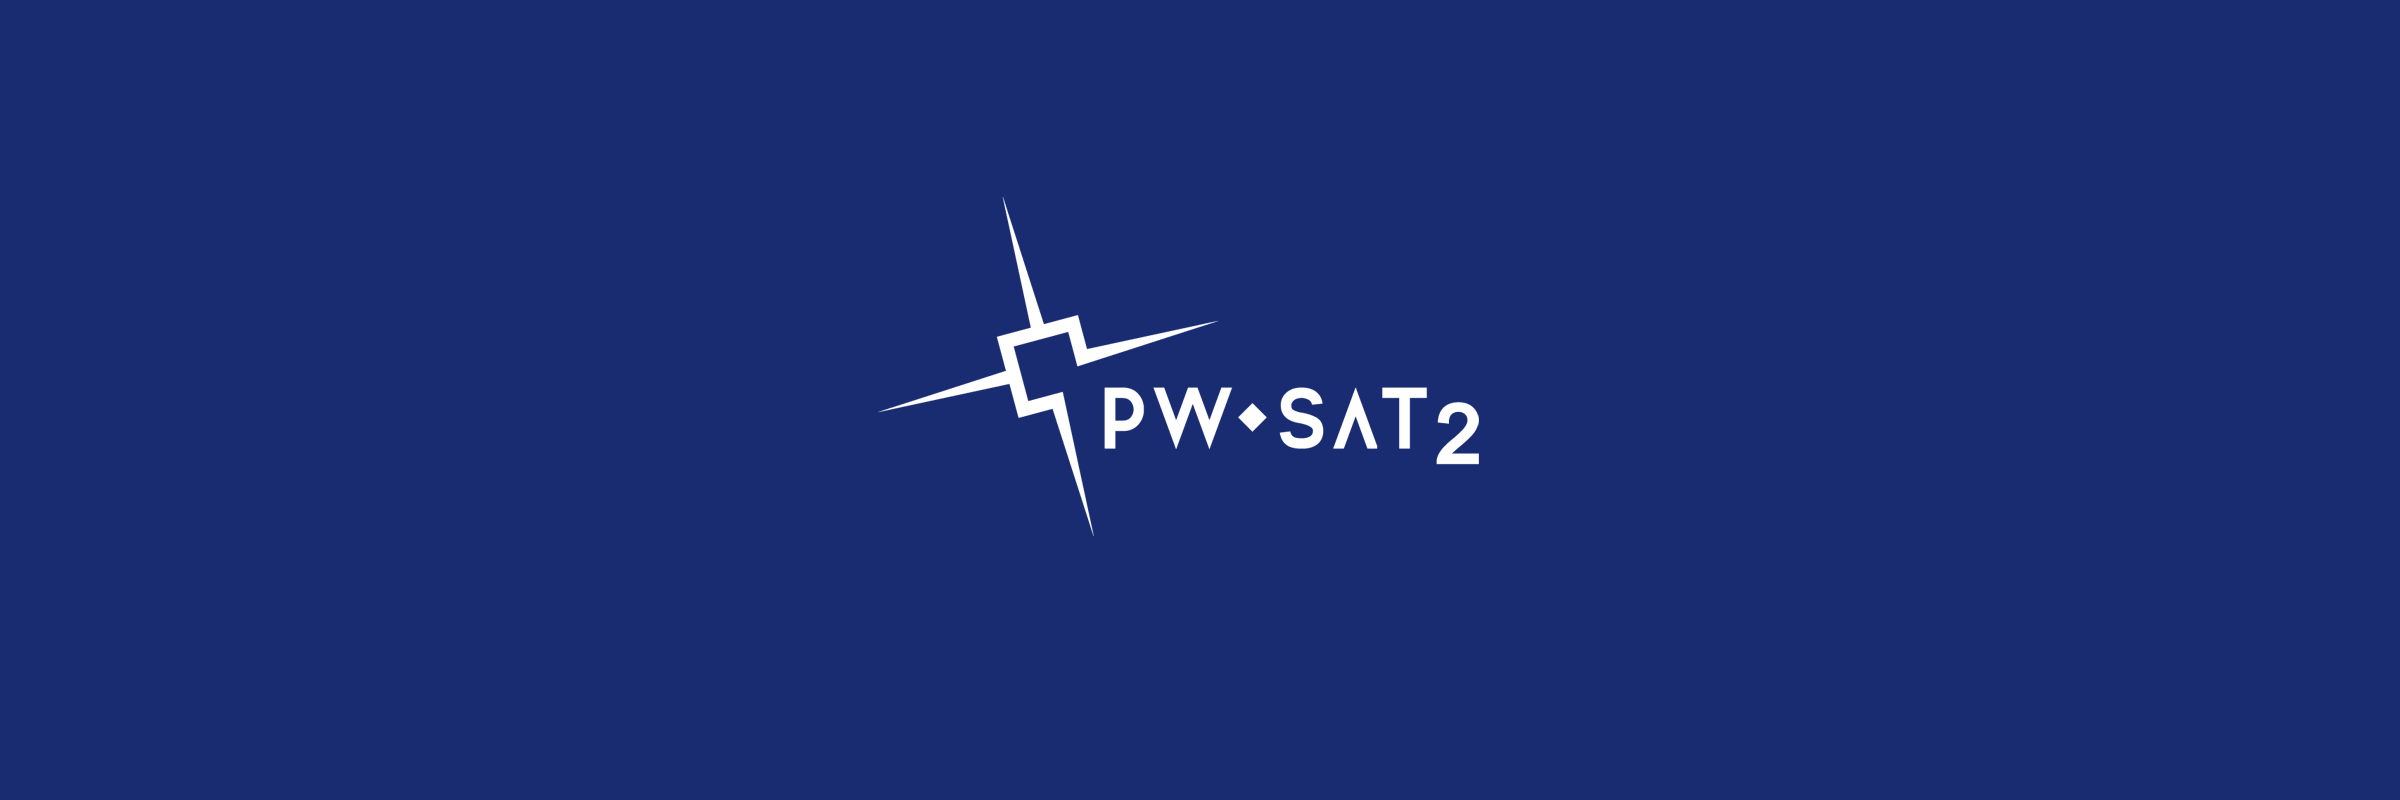 Logo PW-Sat 2 - projekt polskiego satelity studenckiego